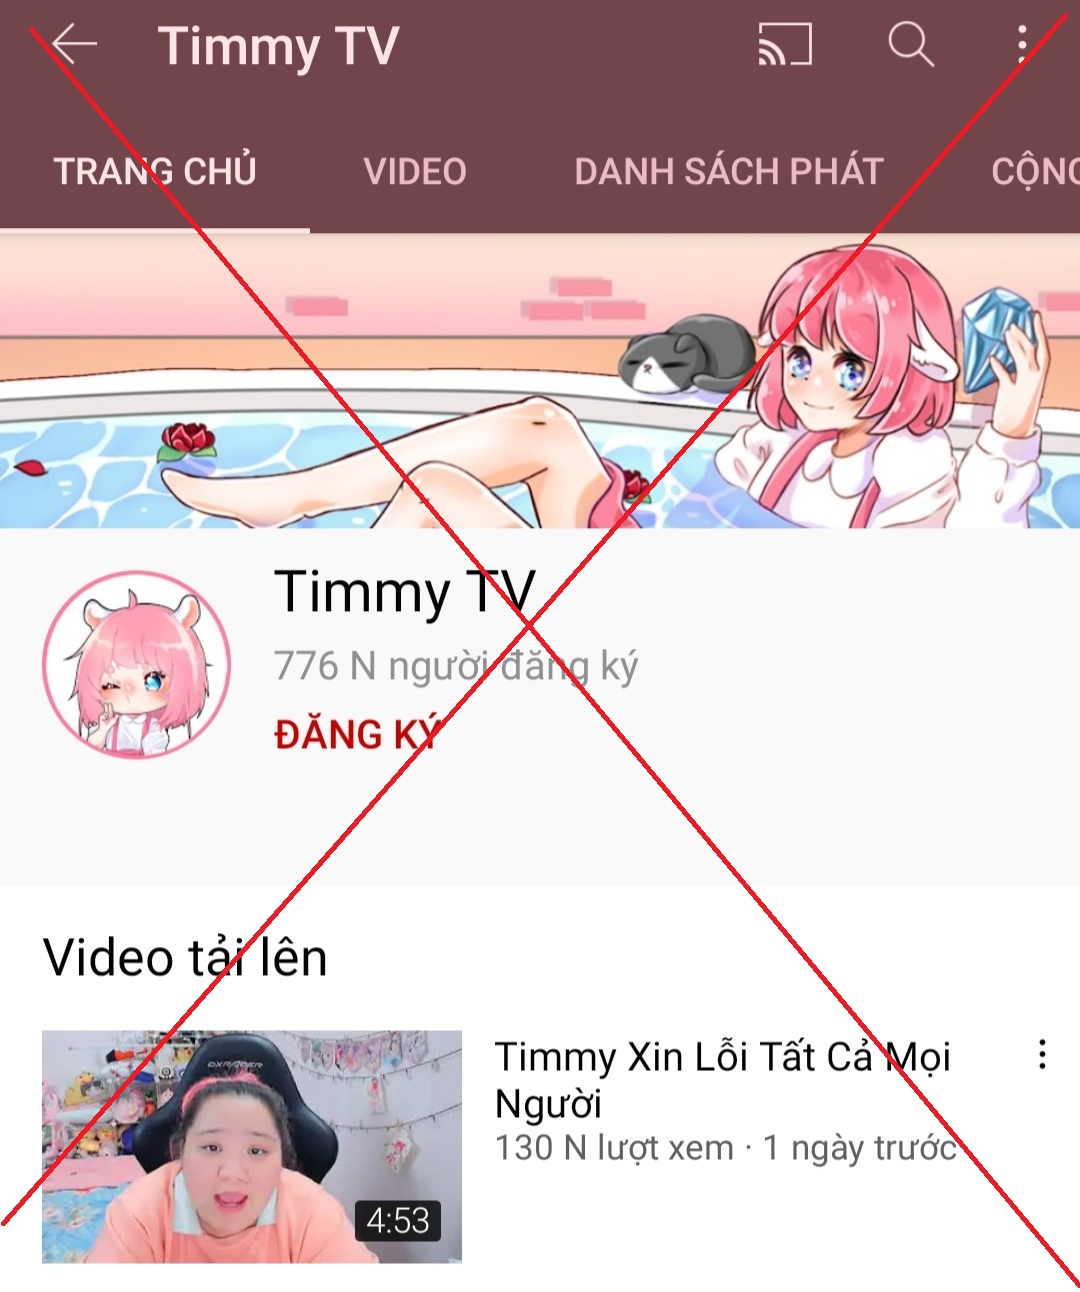 Kênh YouTube Timmy TV bị xử phạt 15 triệu đồng